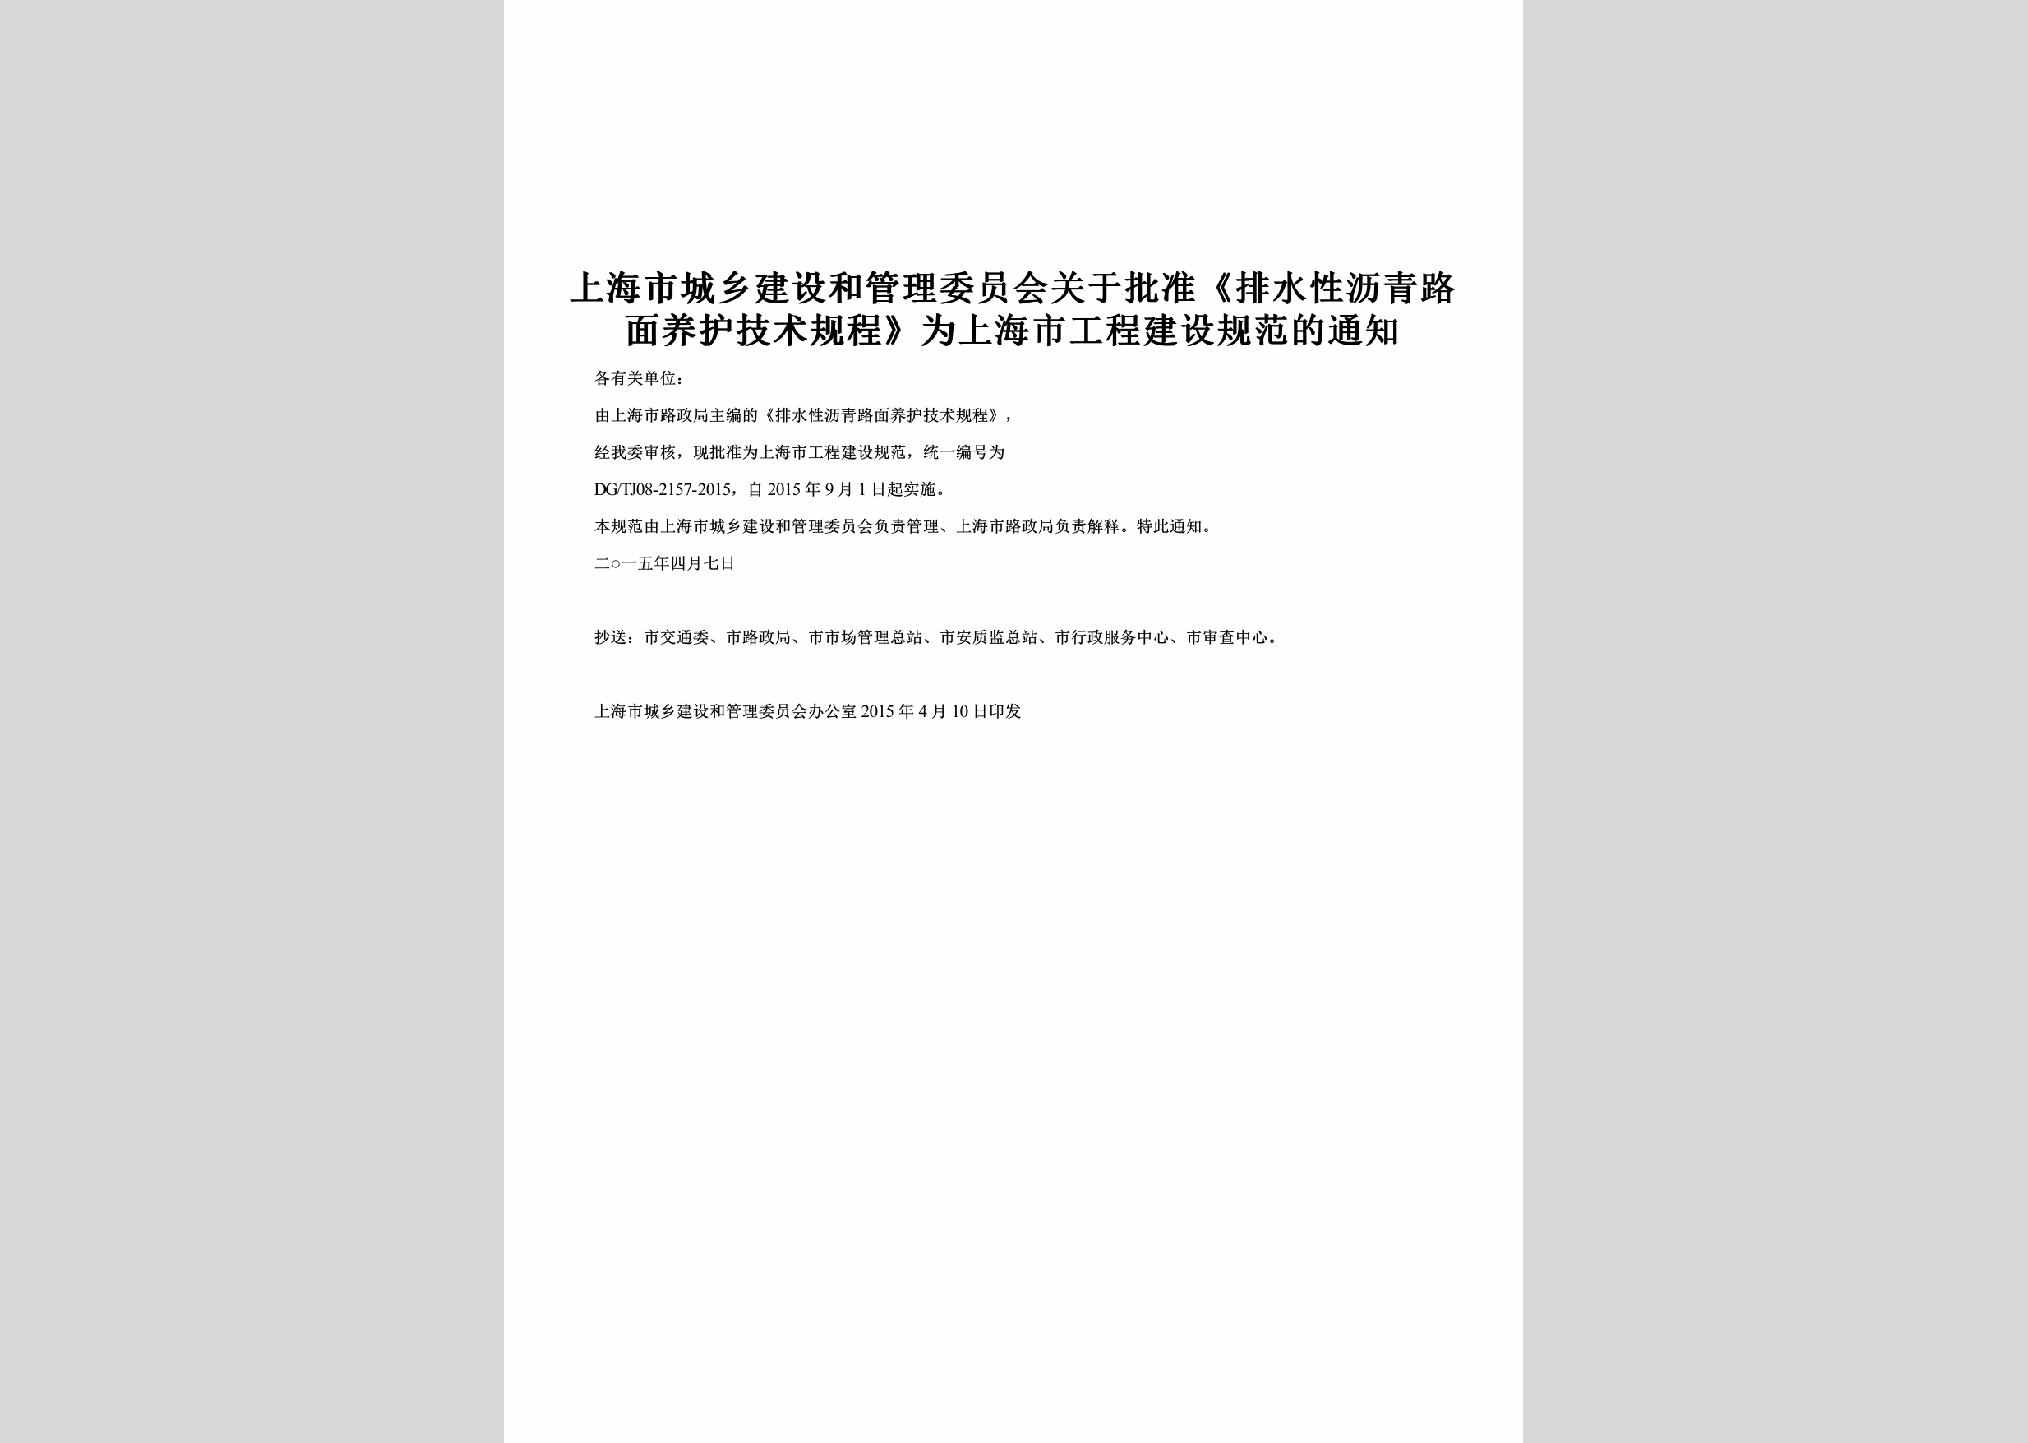 SH-PZYHJSGC-2015：关于批准《排水性沥青路面养护技术规程》为上海市工程建设规范的通知